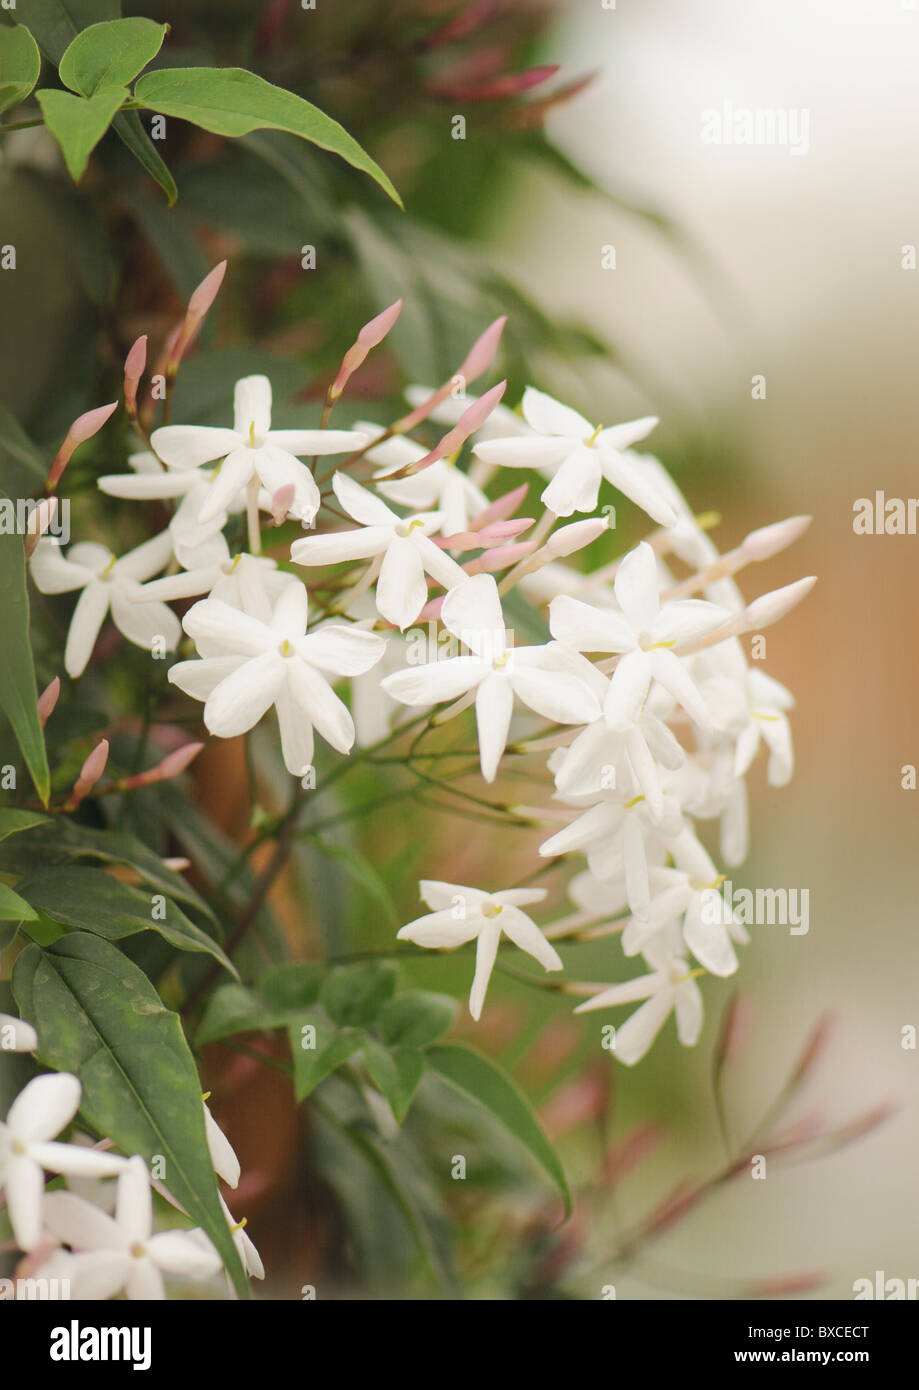 Les délicates fleurs blanches de Jasminum polyanthum - Jasmin rose Banque D'Images